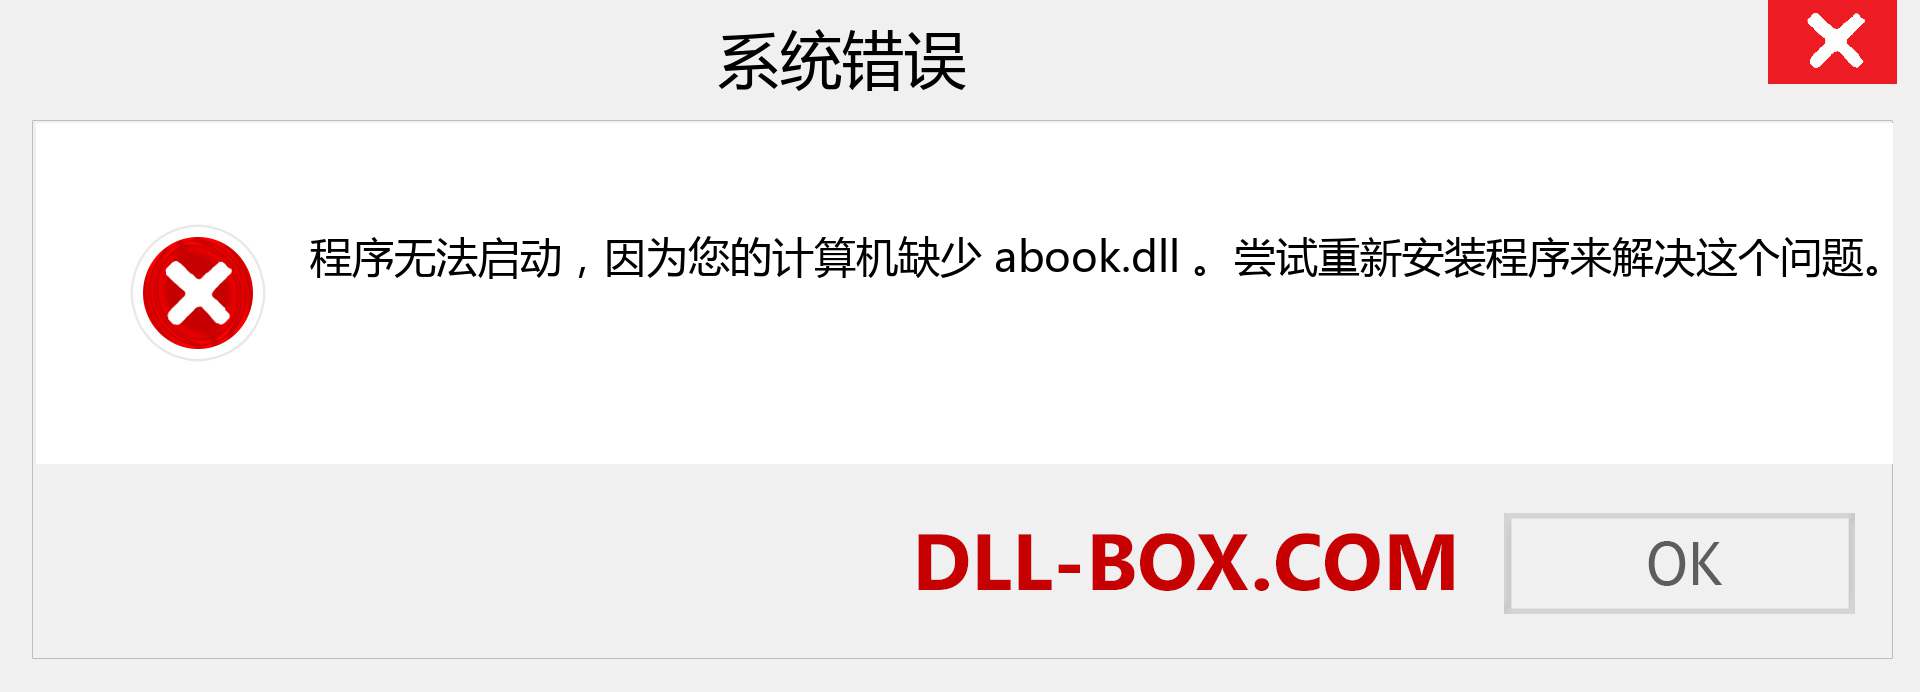 abook.dll 文件丢失？。 适用于 Windows 7、8、10 的下载 - 修复 Windows、照片、图像上的 abook dll 丢失错误